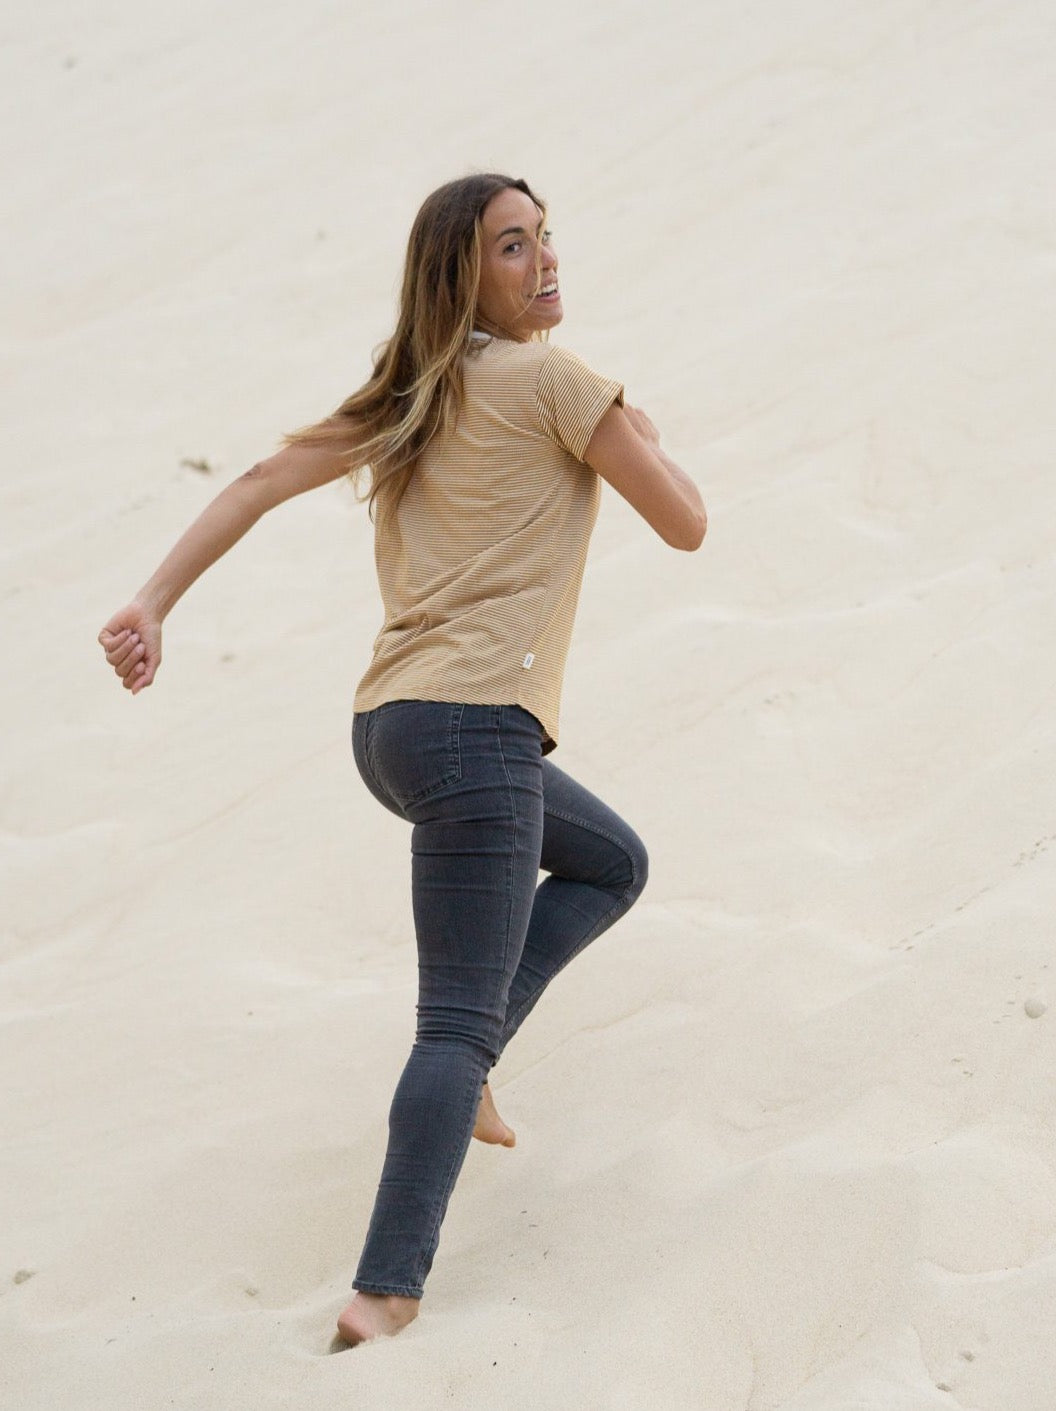 Rachel trägt unser Fair Fashion Streifenshirt in creme senf und rennt am Strand